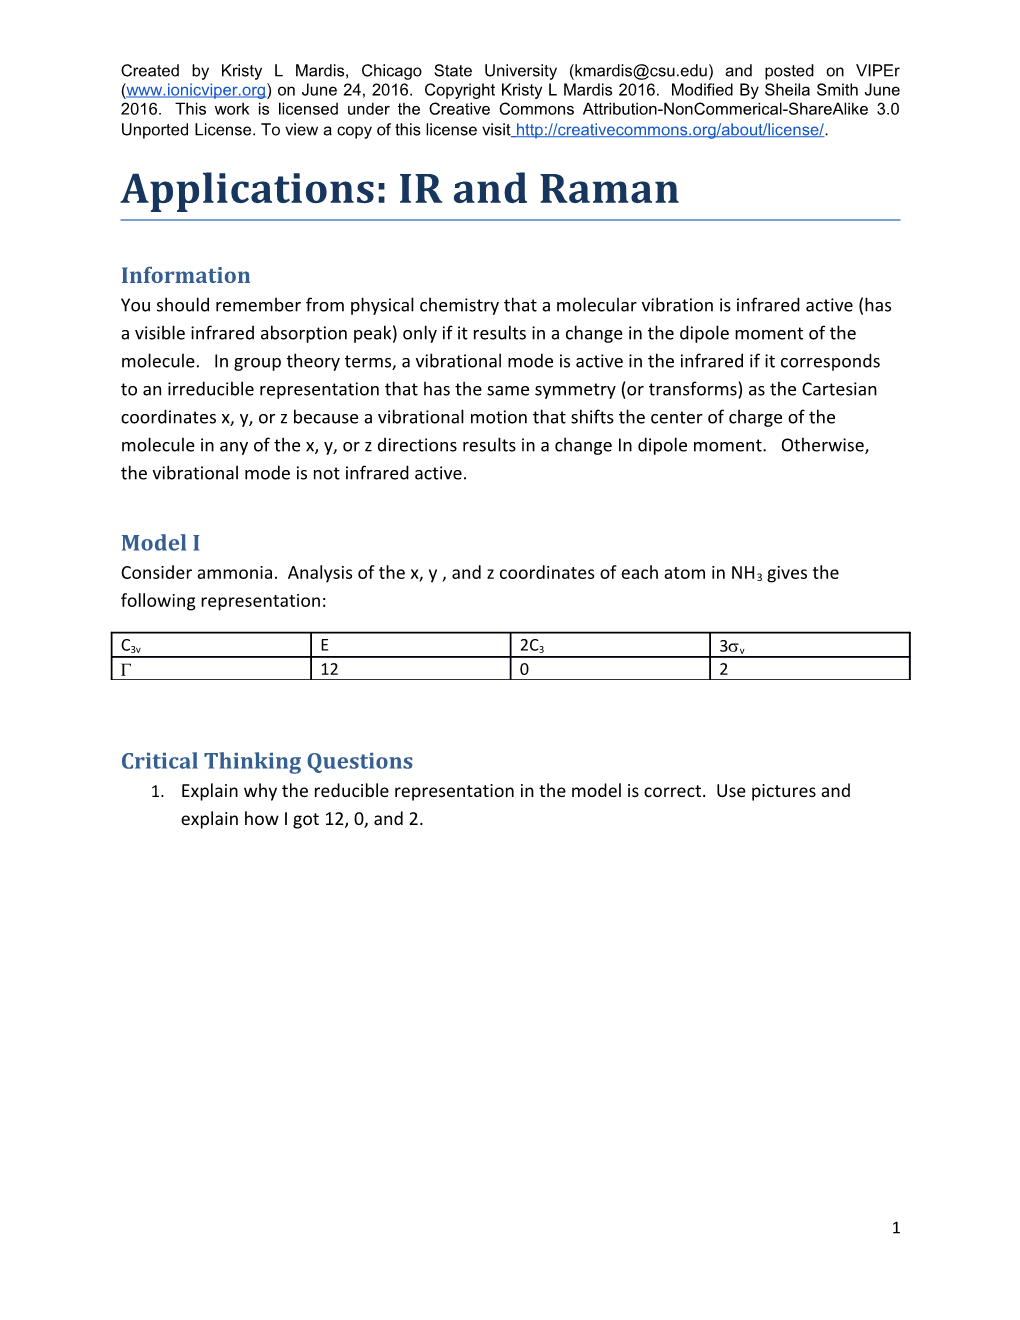 Applications: IR and Raman